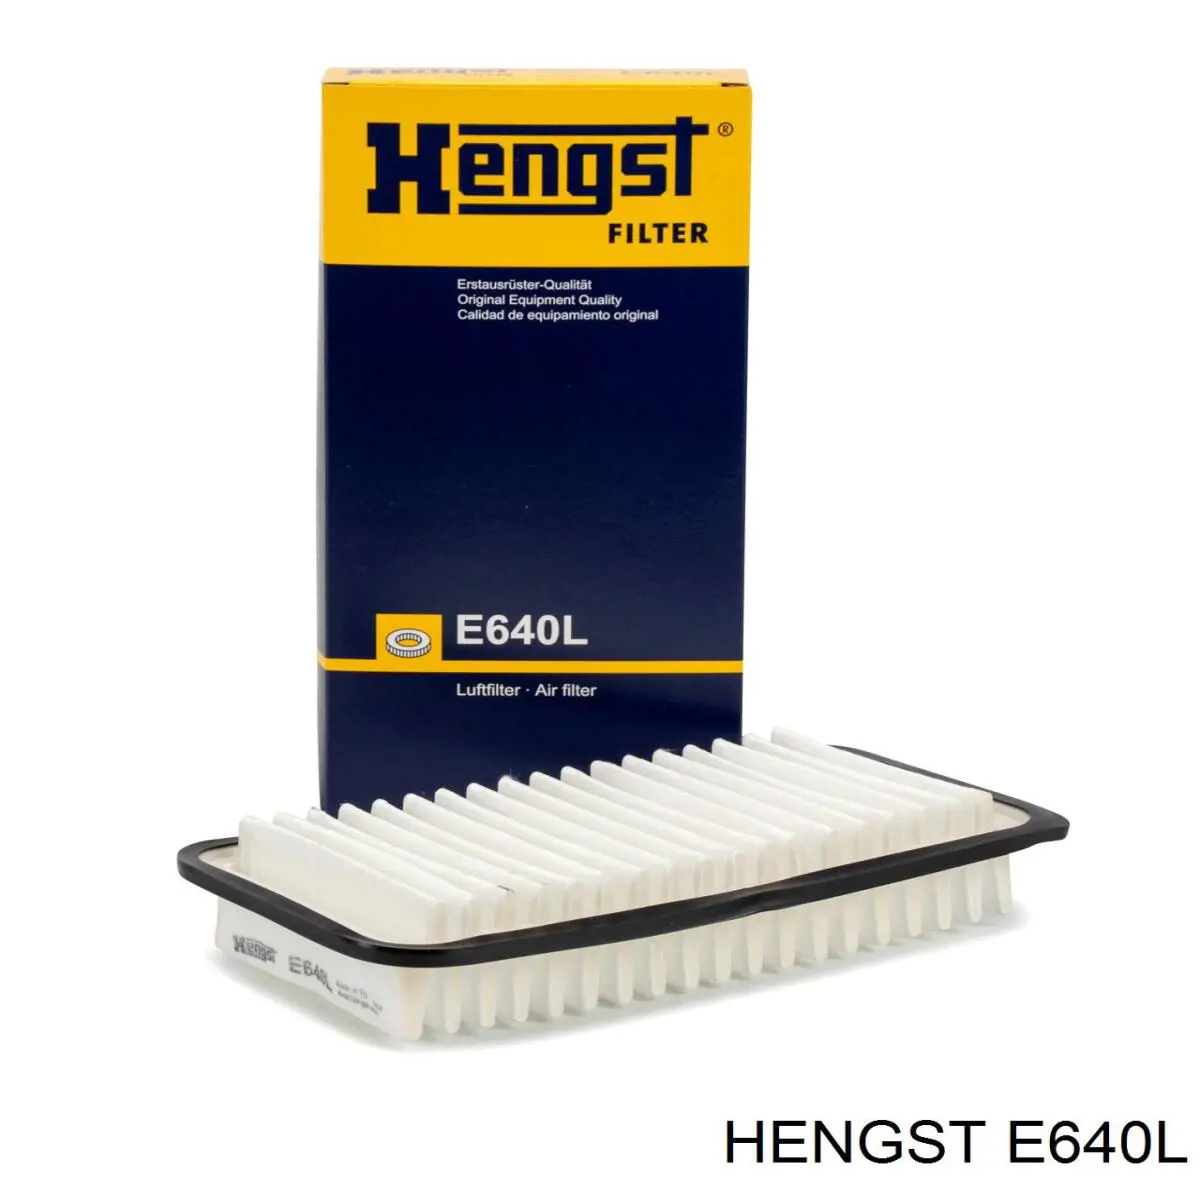 E640L Hengst filtro de aire